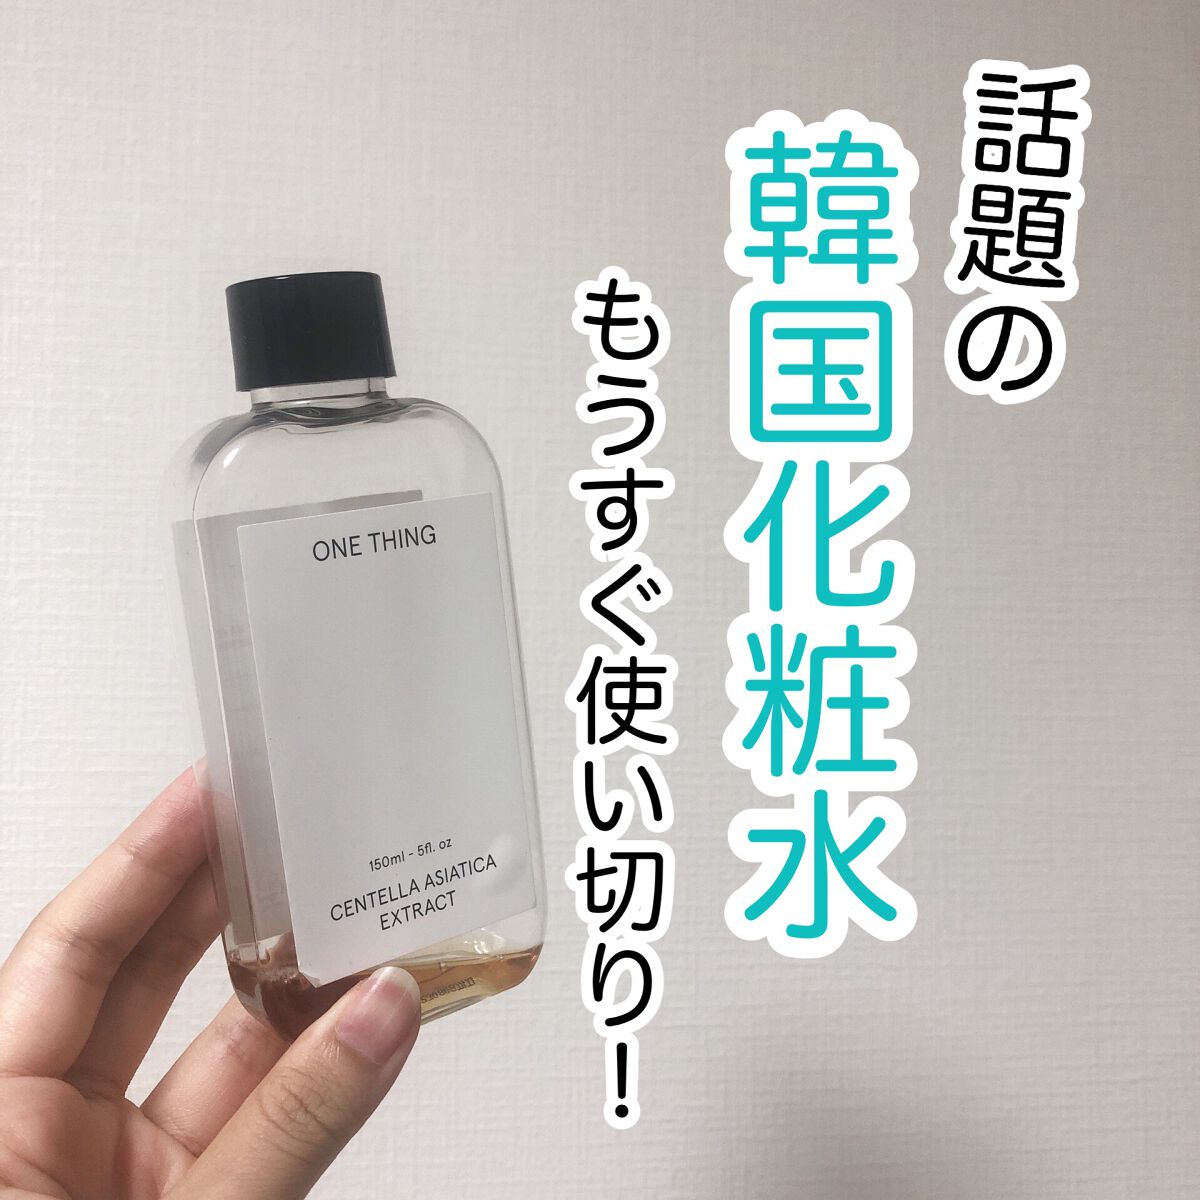 ワンシング ONE THING 化粧水 ツボクサエキス スキンケア トナー 韓国 通販